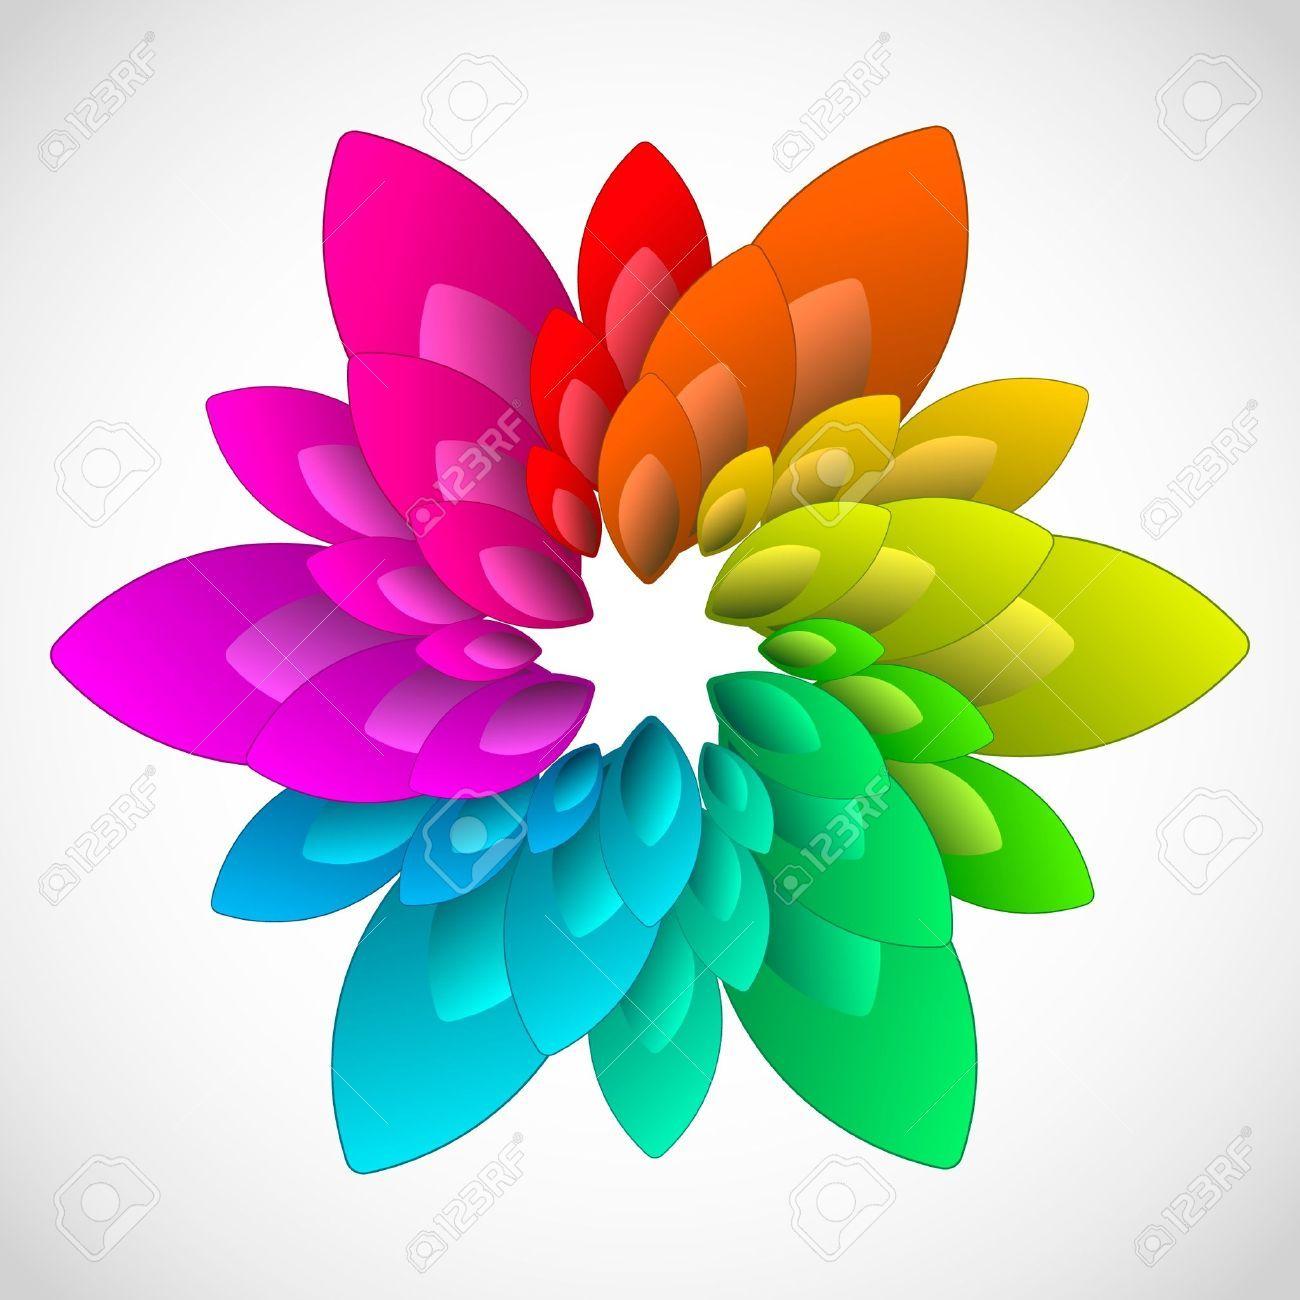 Rainbow Flower Logo - Rainbow Flower Clipart | Free download best Rainbow Flower Clipart ...